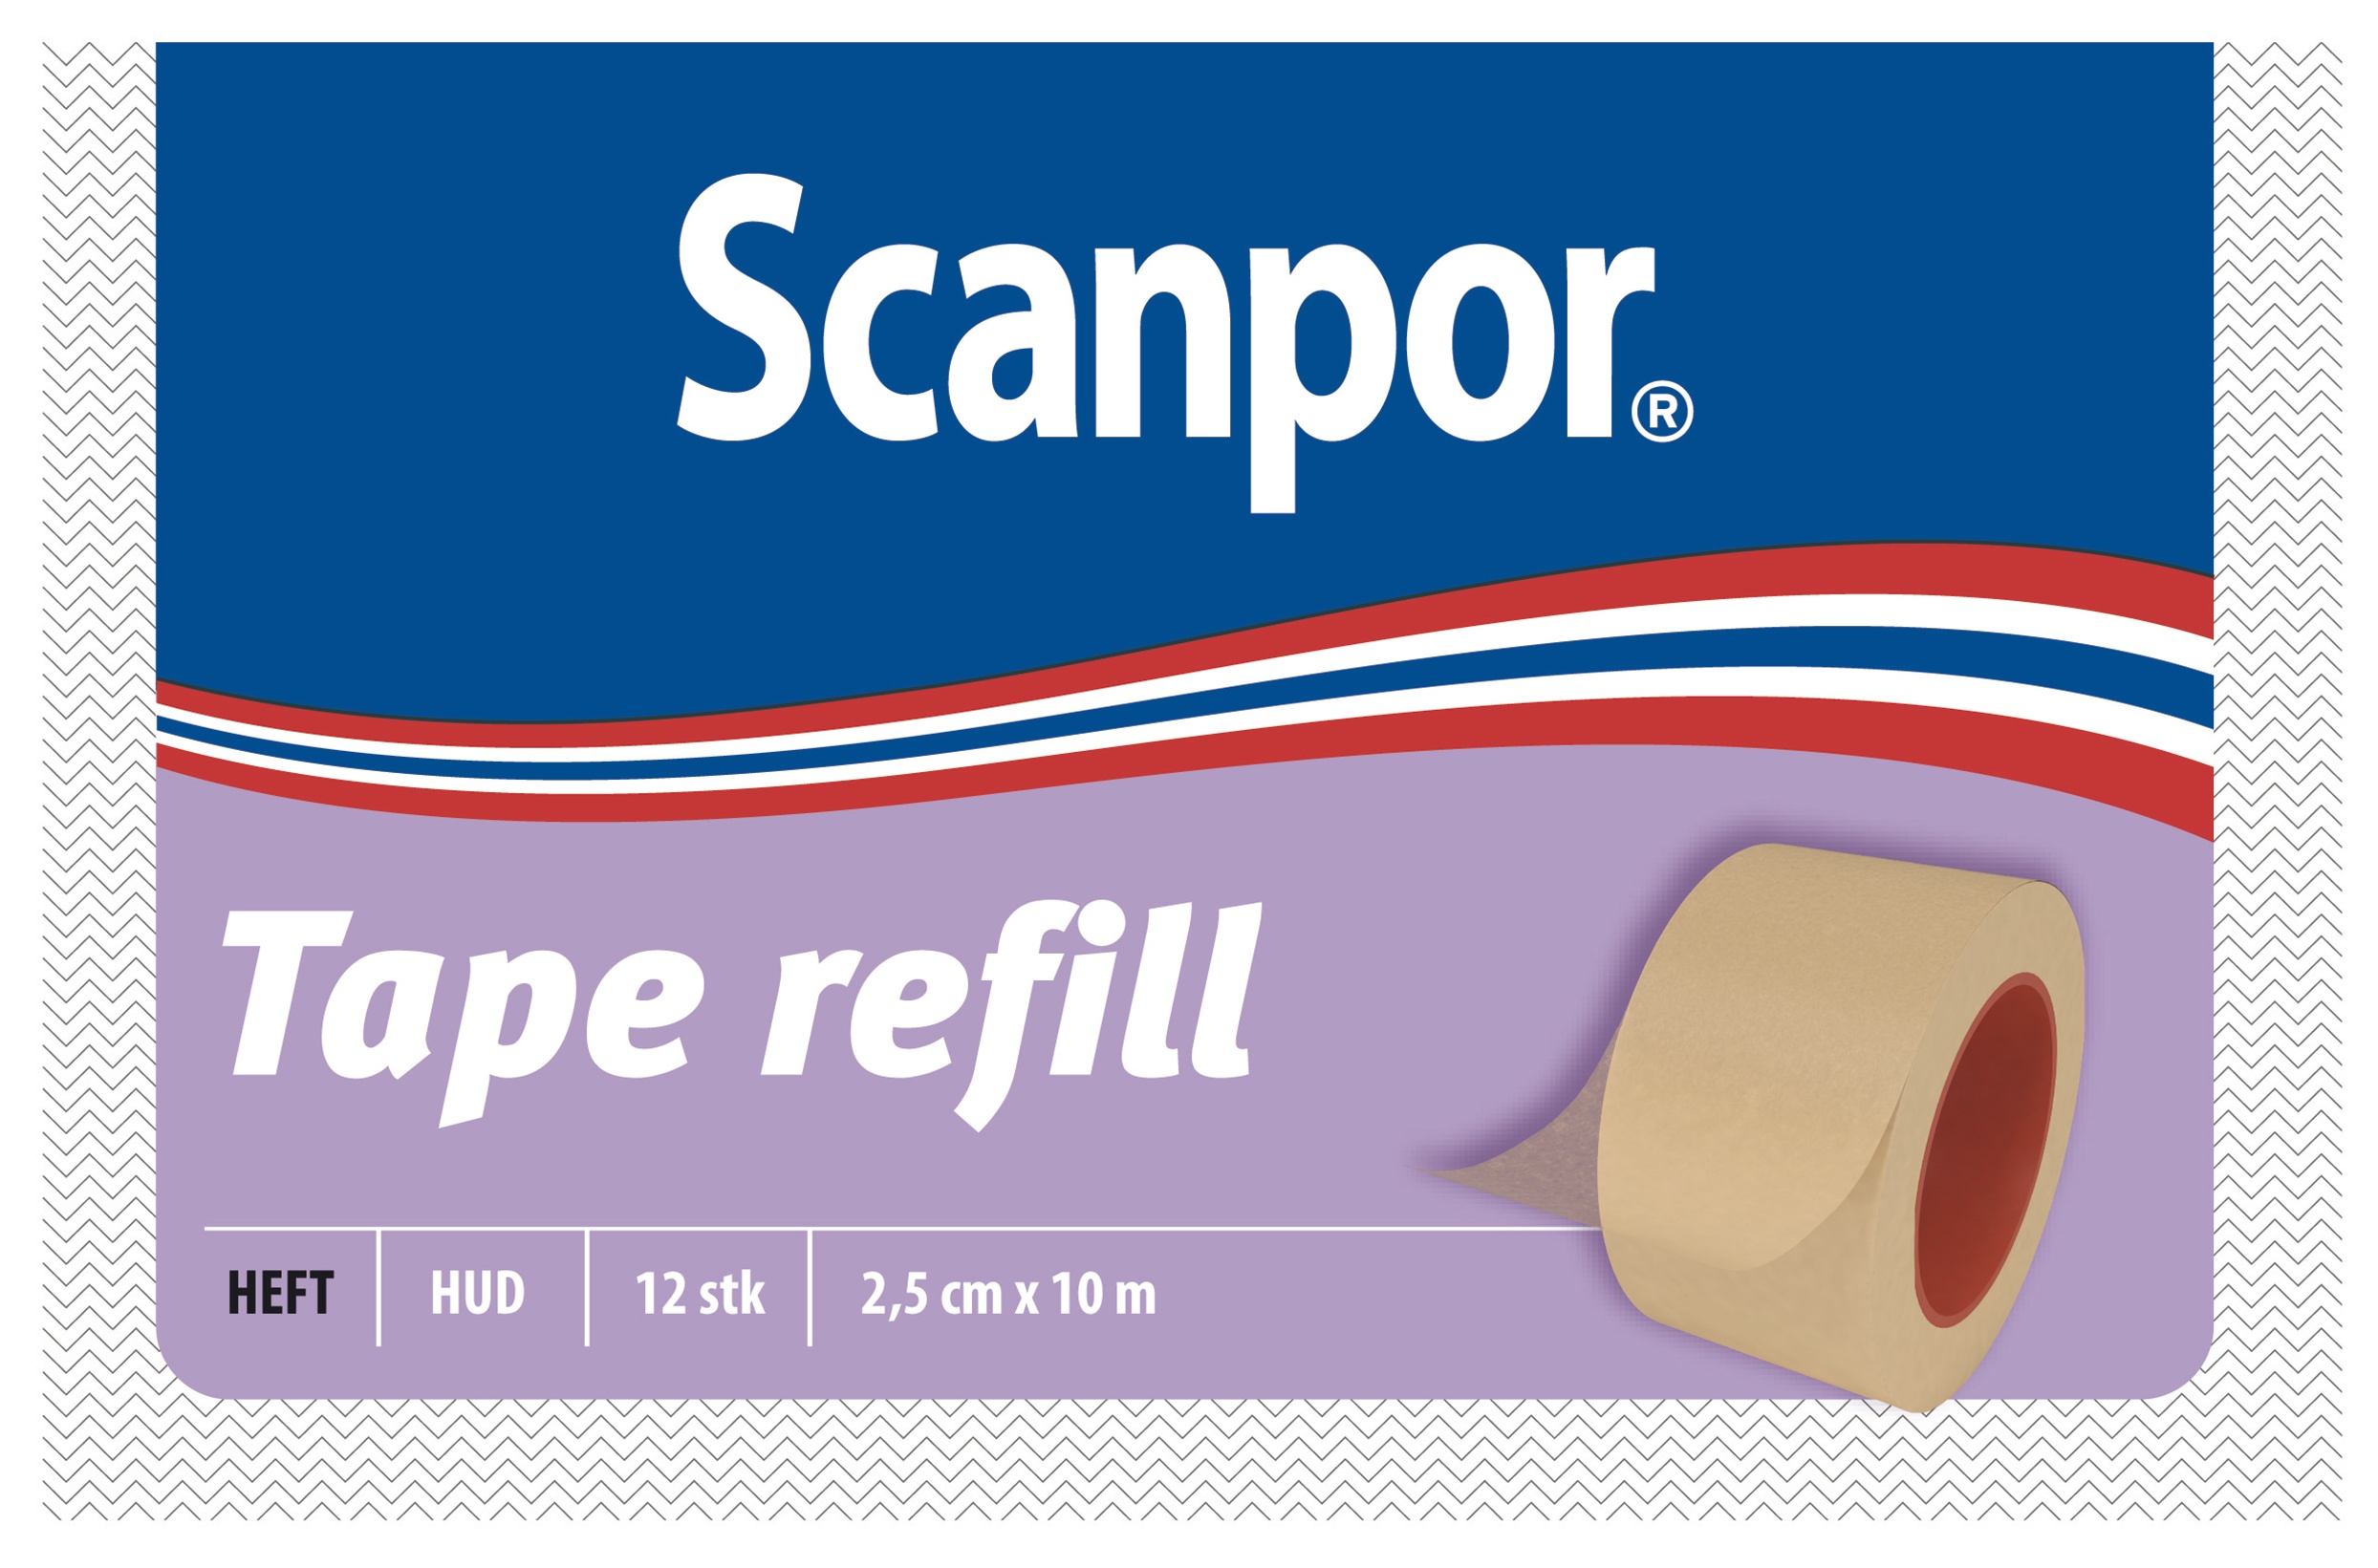 Scanpor tape